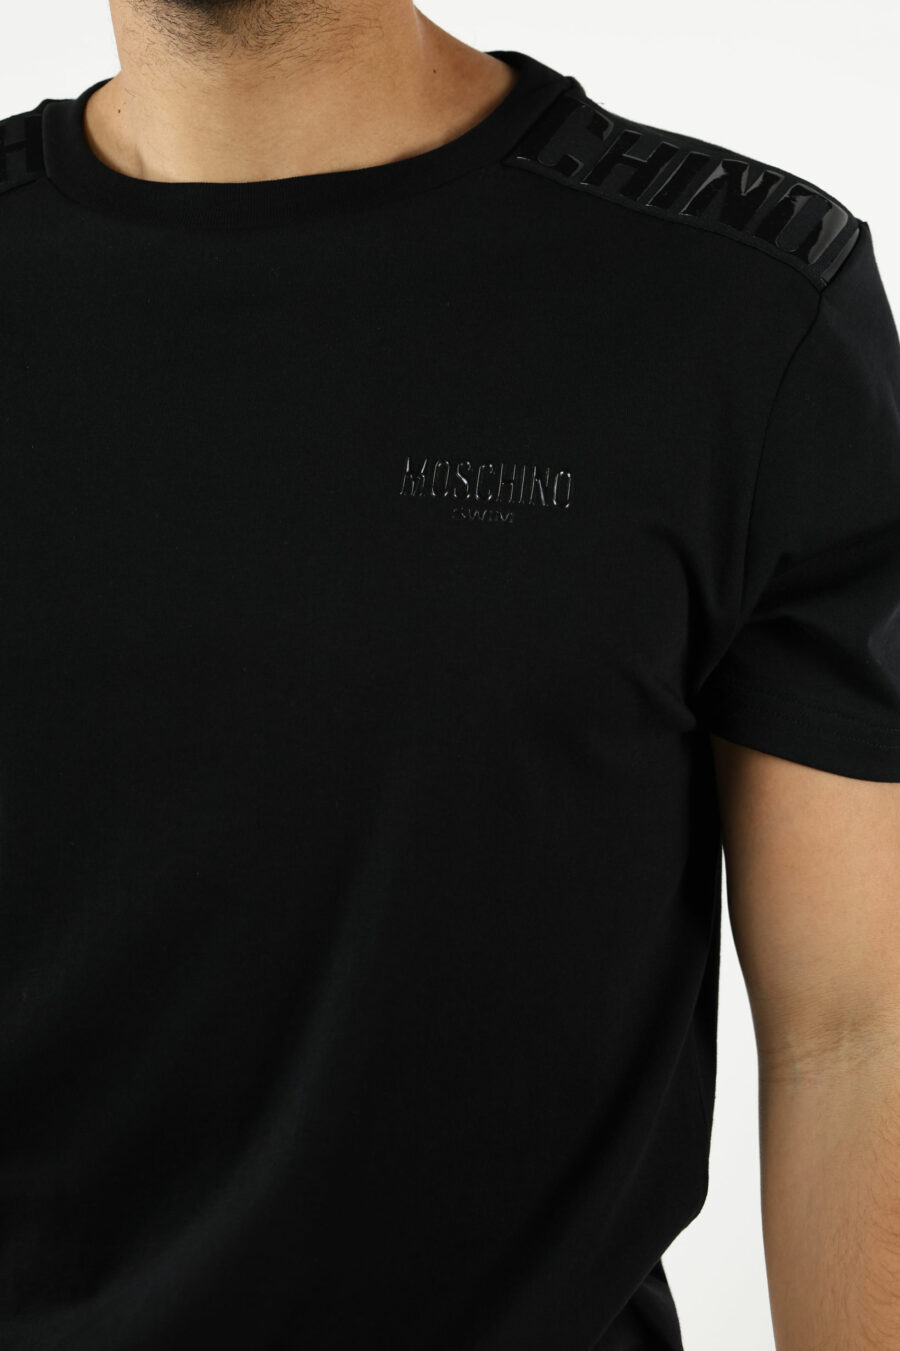 T-shirt noir avec logo en caoutchouc monochrome sur les épaules - 111047